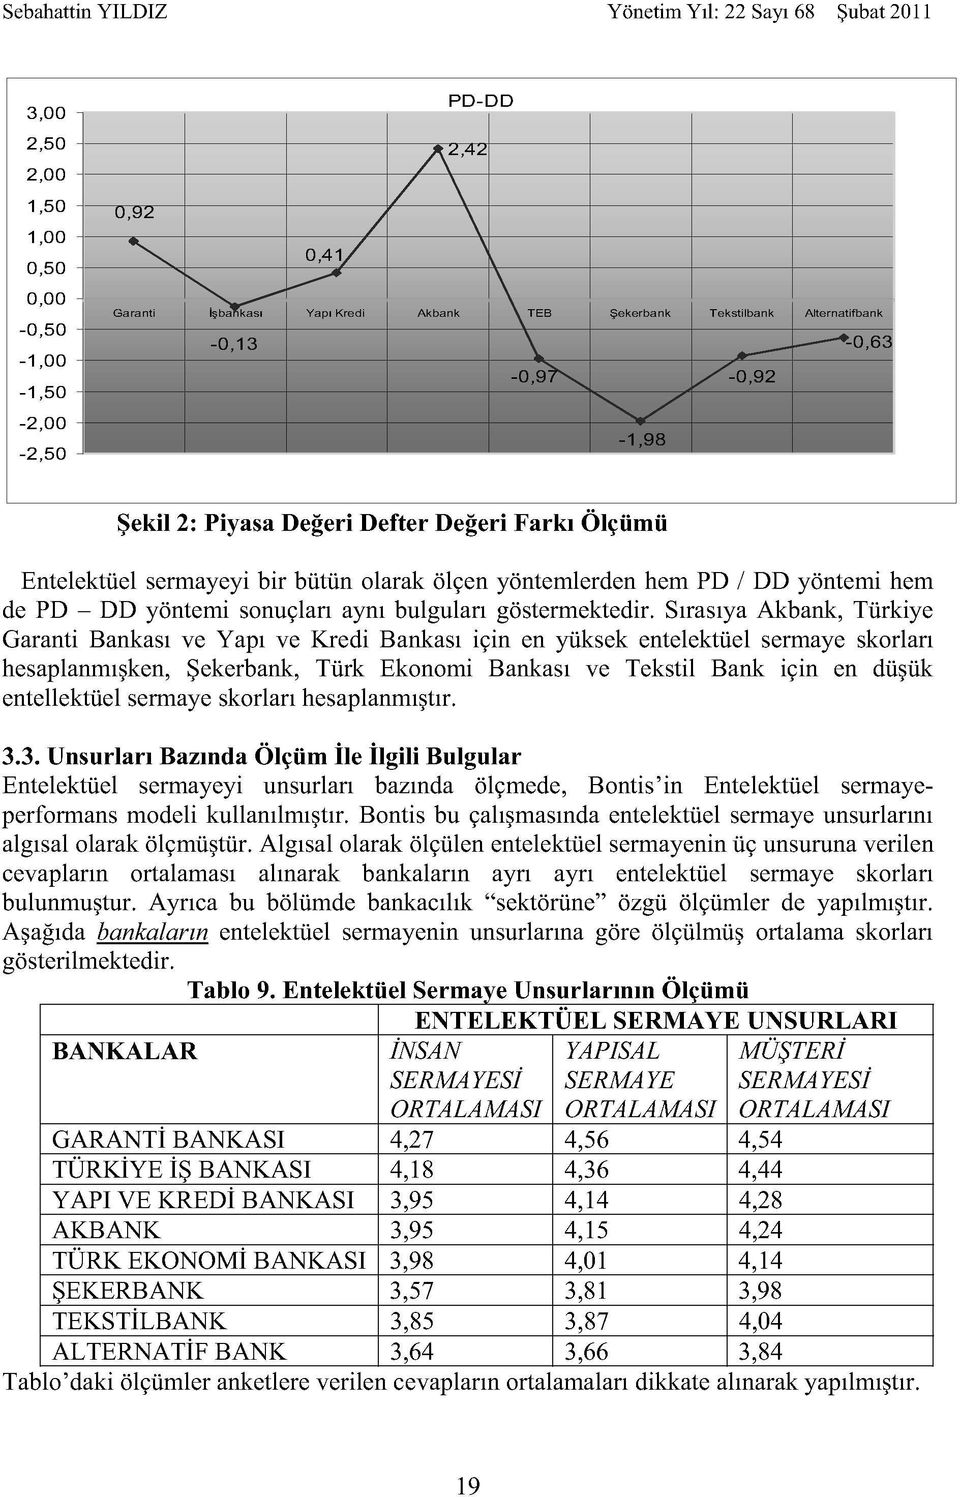 Sırasıya Akbank, Türkiye Garanti Bankası ve Yapı ve Kredi Bankası için en yüksek entelektüel sermaye skorları hesaplanmışken, Şekerbank, Türk Ekonomi Bankası ve Tekstil Bank için en düşük